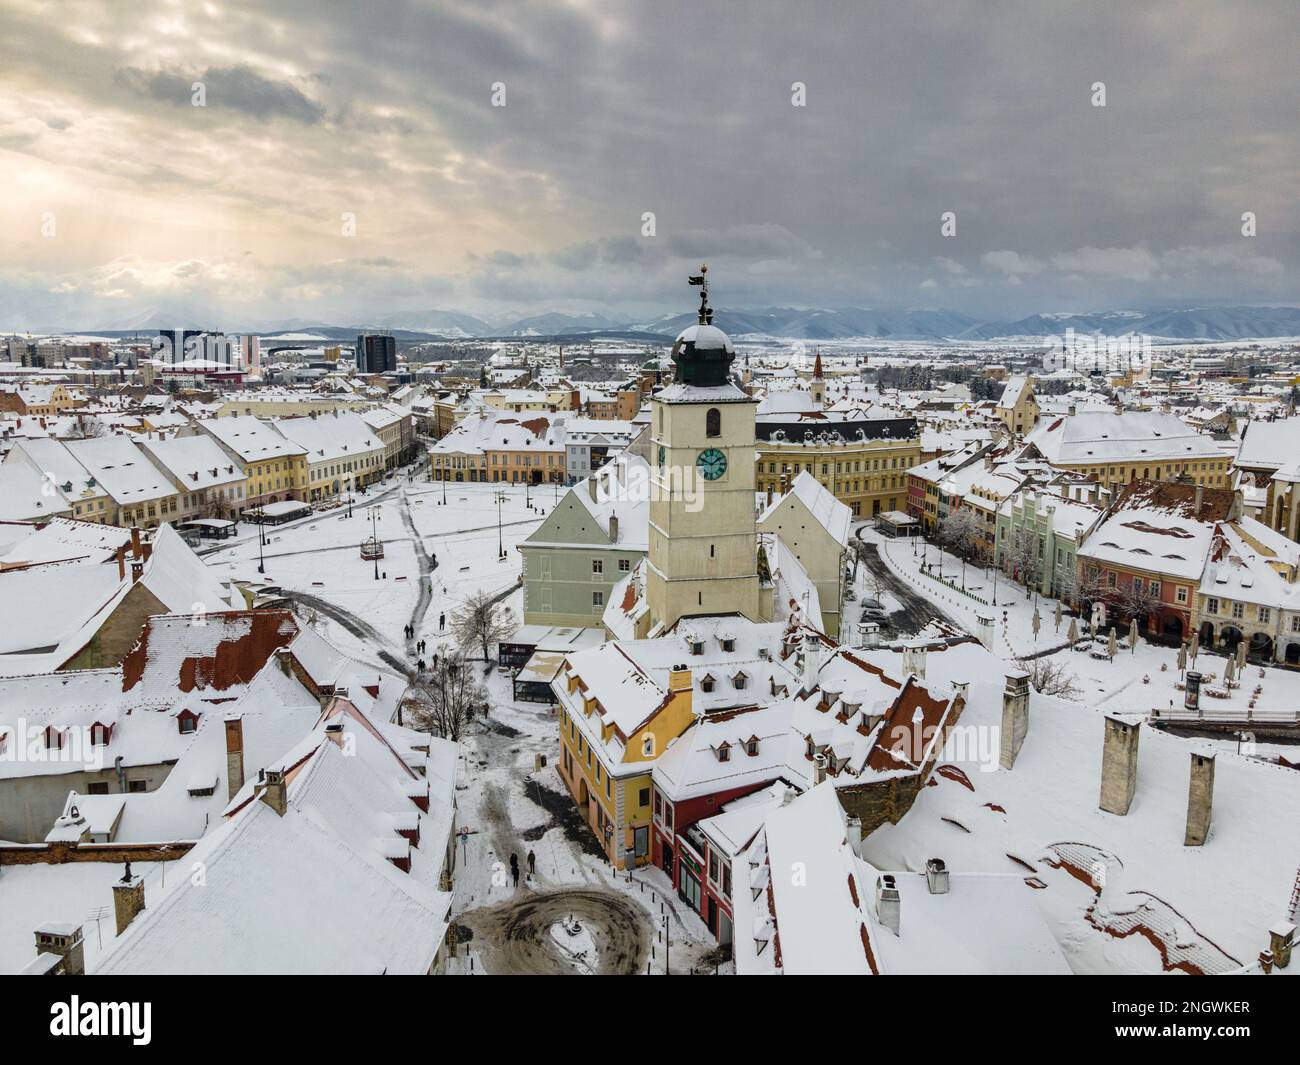 Vue panoramique sur le centre-ville historique de Sibiu, Roumanie au coucher du soleil. Photographie de drone de paysage urbain du dessus contenant le petit carré et le t Banque D'Images